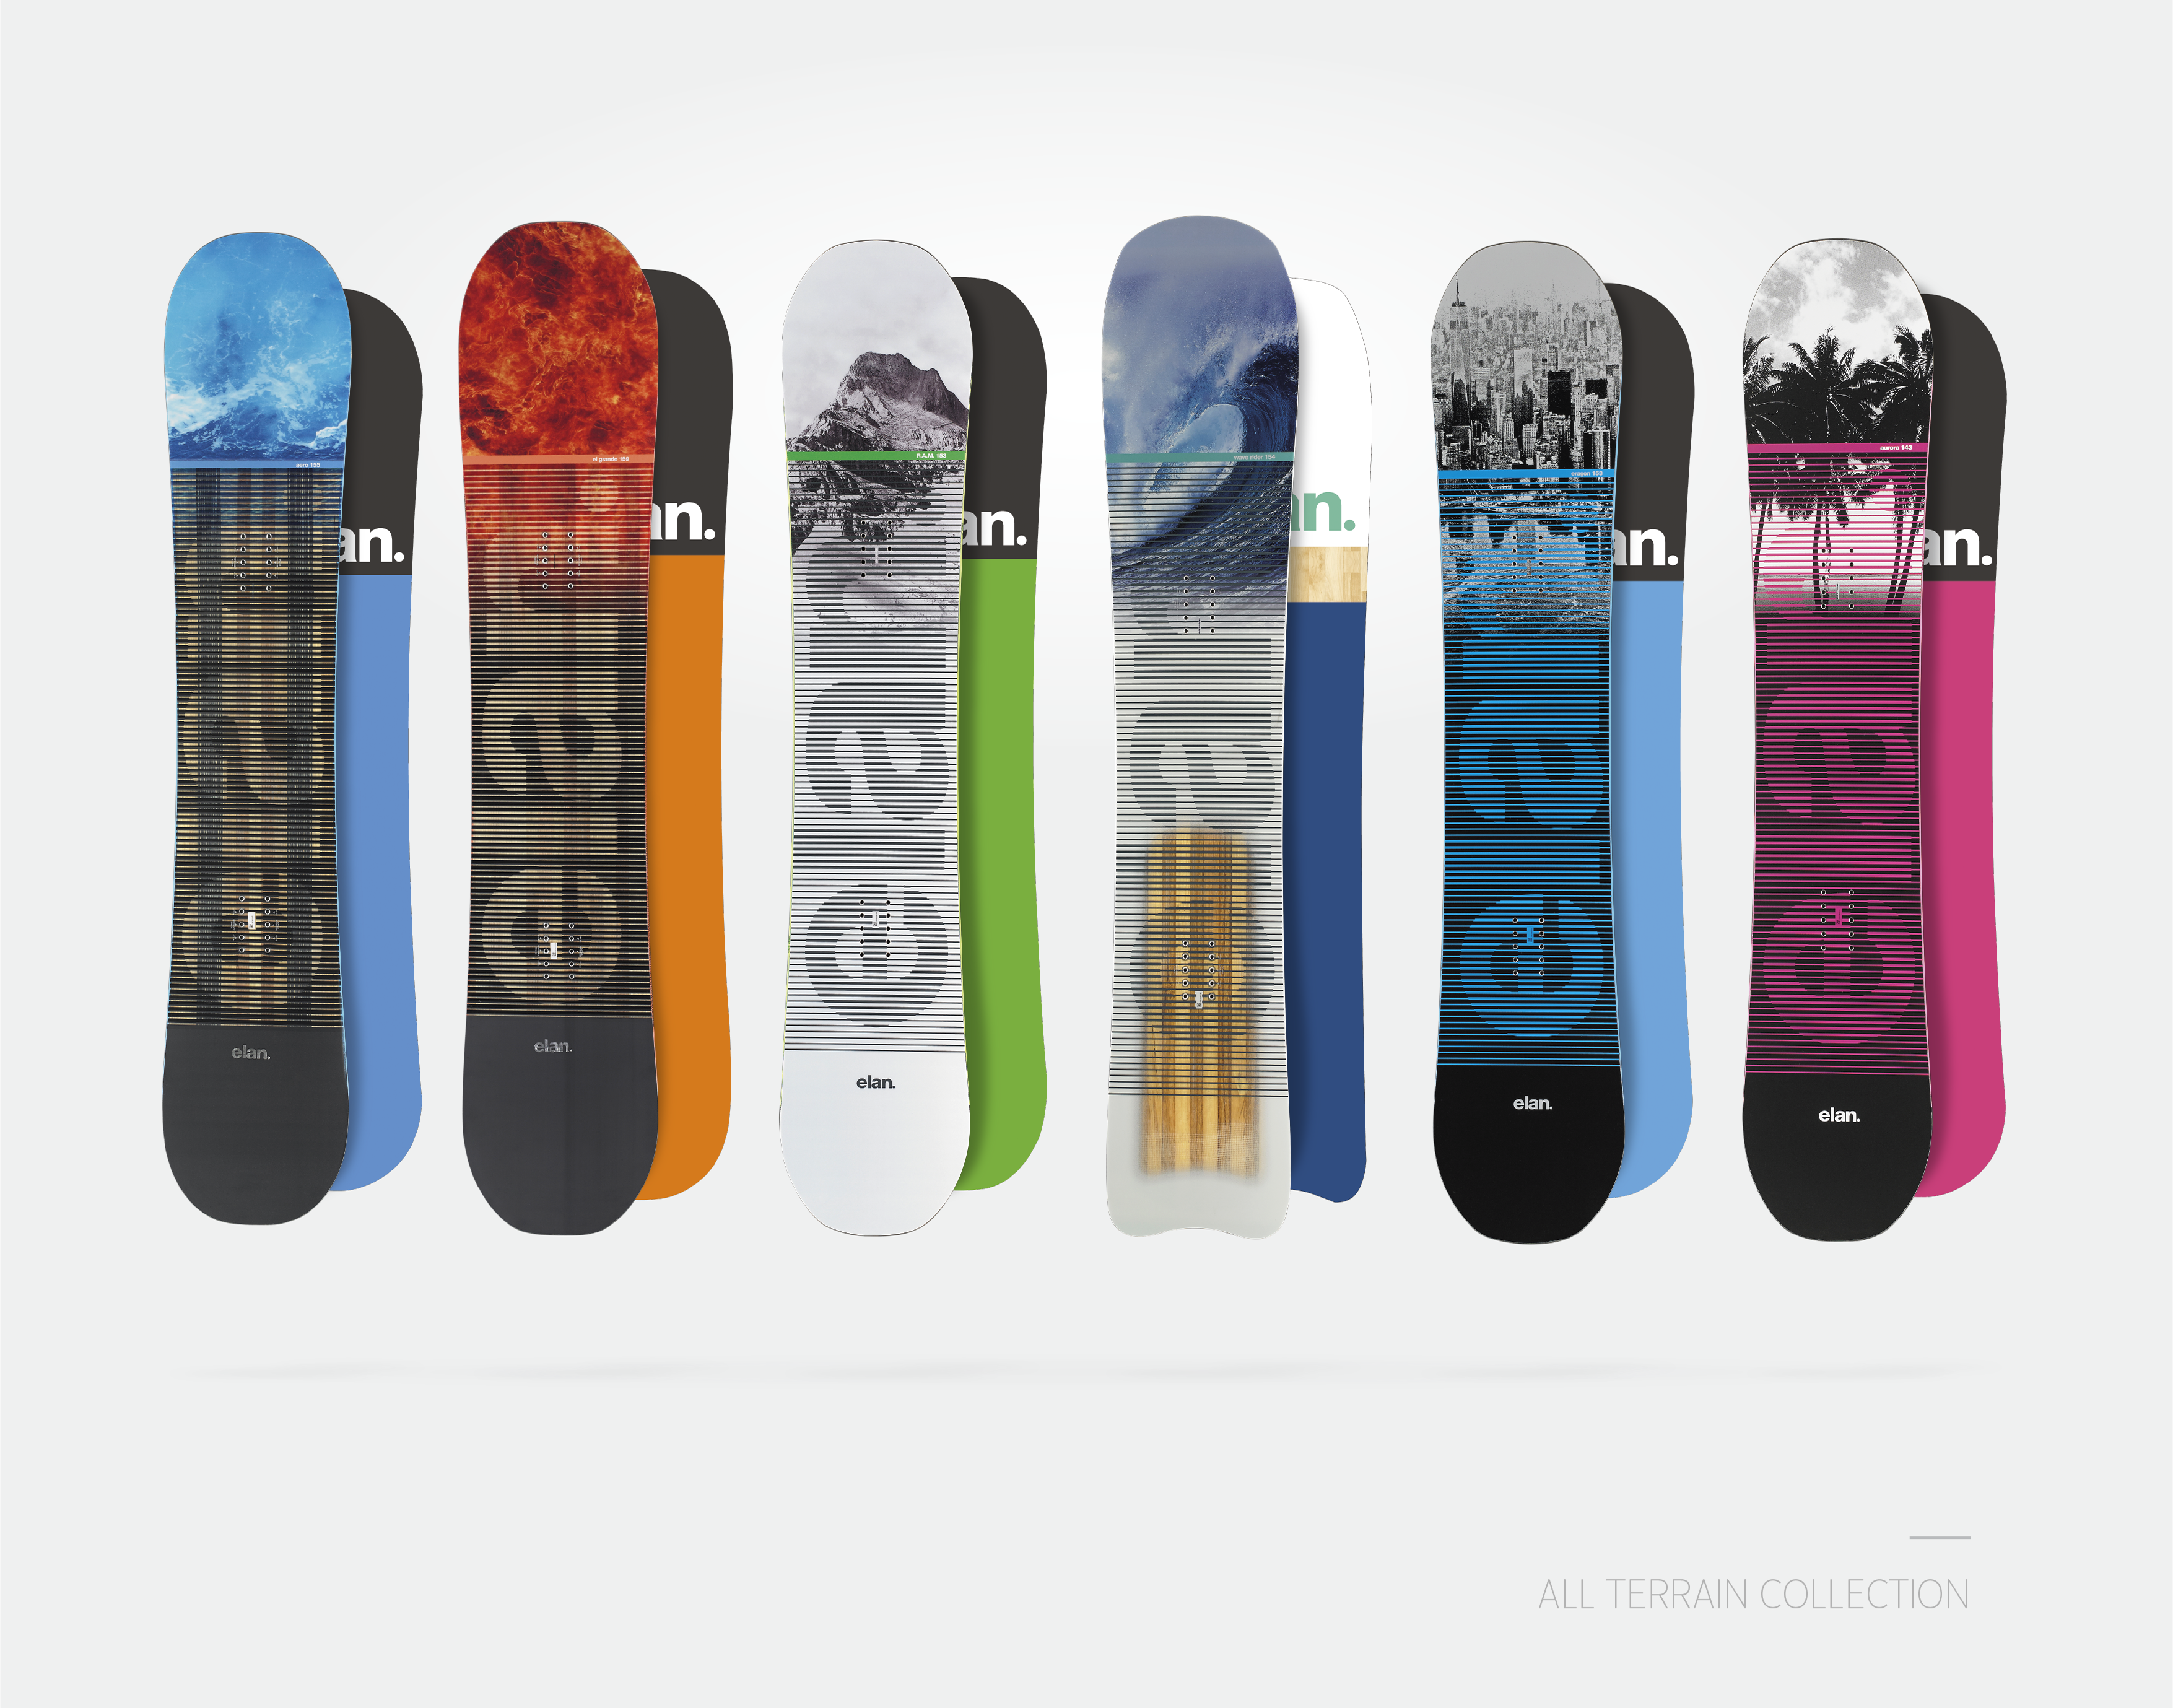 elan snowboard